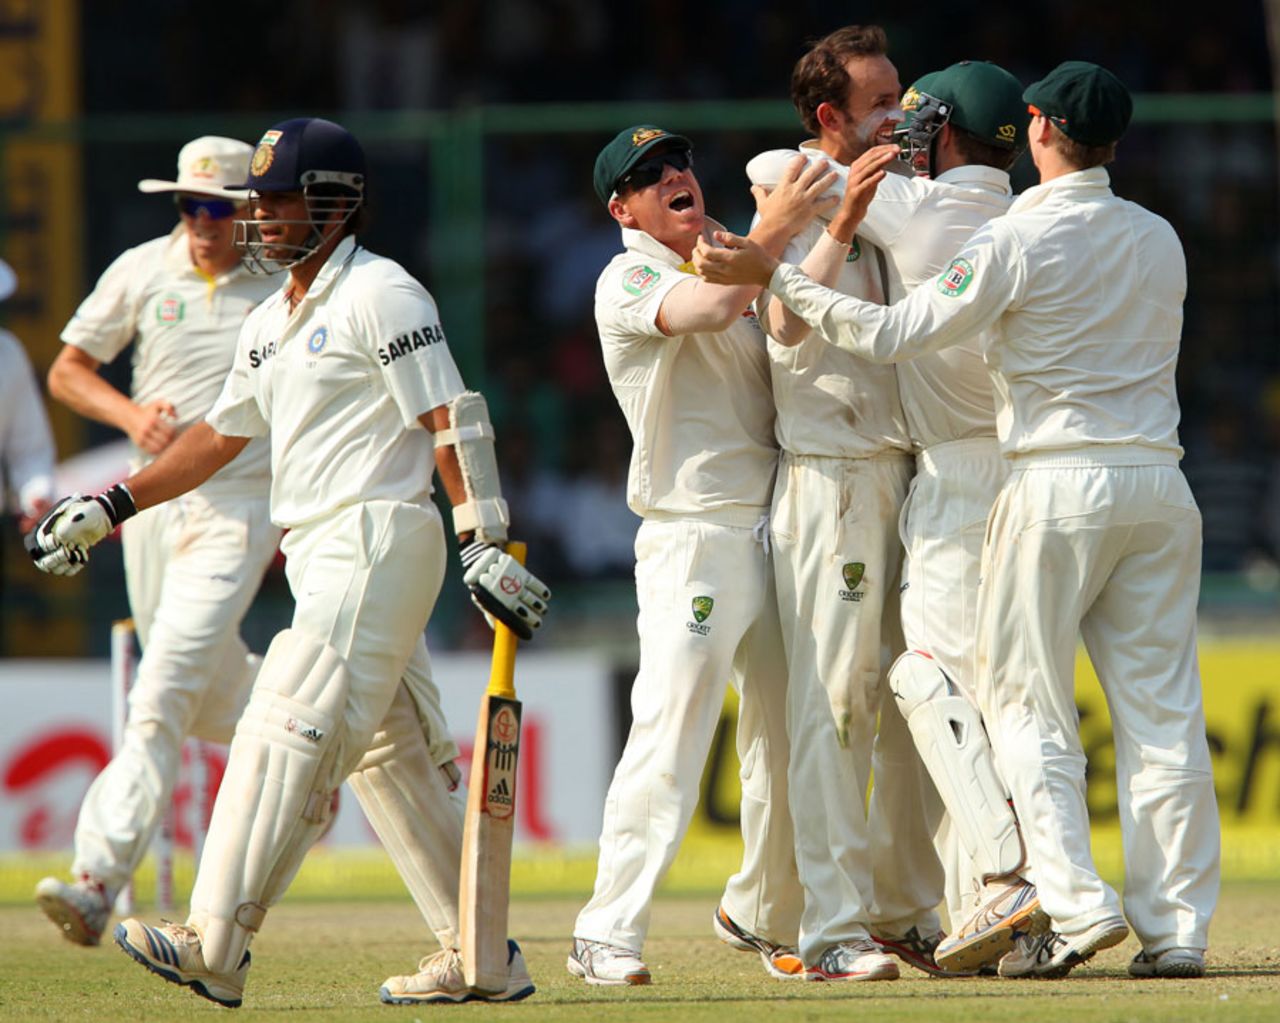 Nathan Lyon picks up Sachin Tendulkar's wicket, India v Australia, 4th Test, Delhi, 2nd day, March 23, 2013